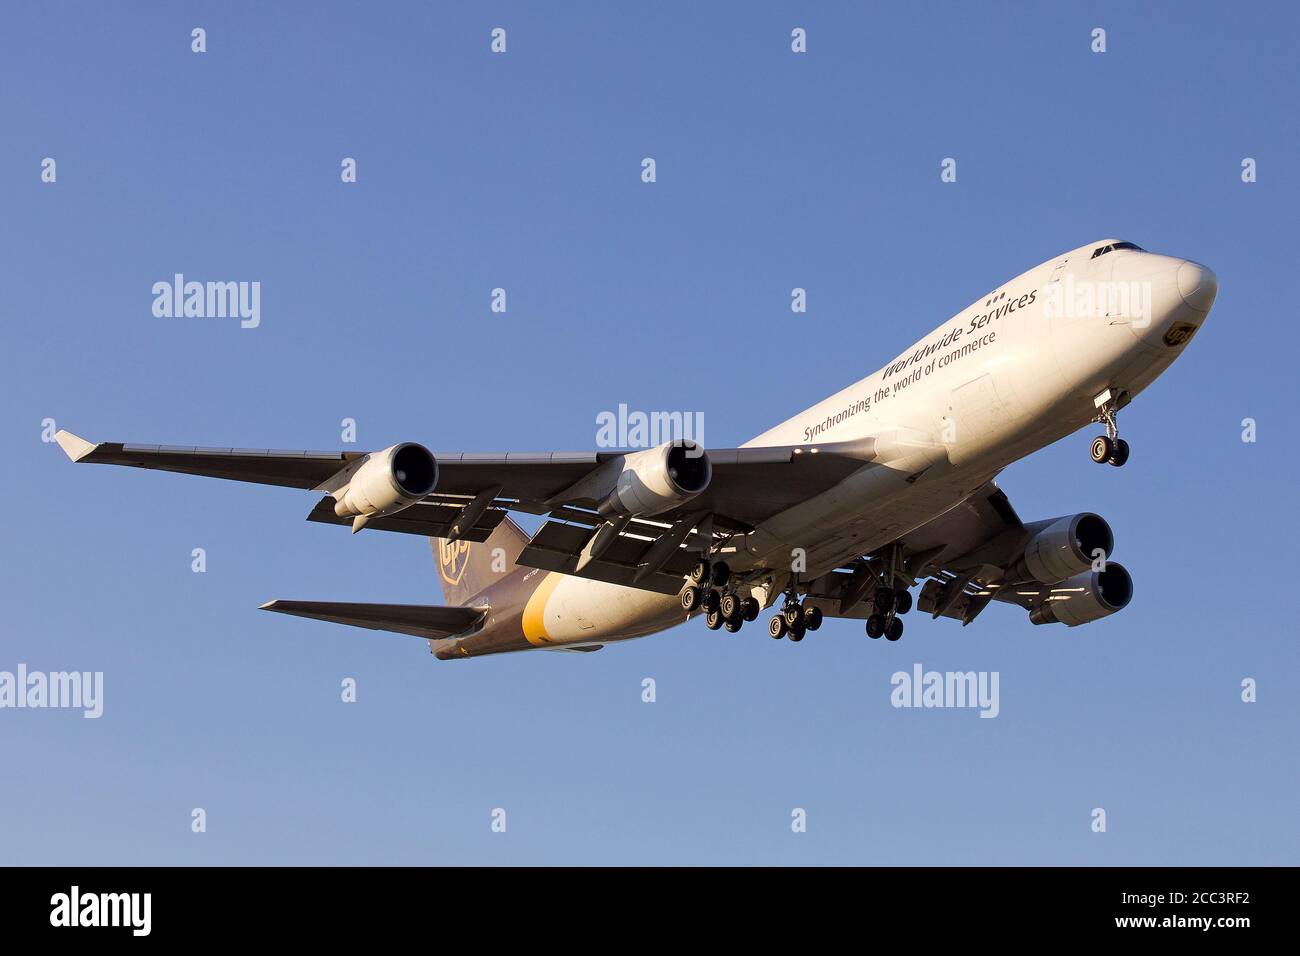 UPS Cargo Boeing 747 Stock Photo